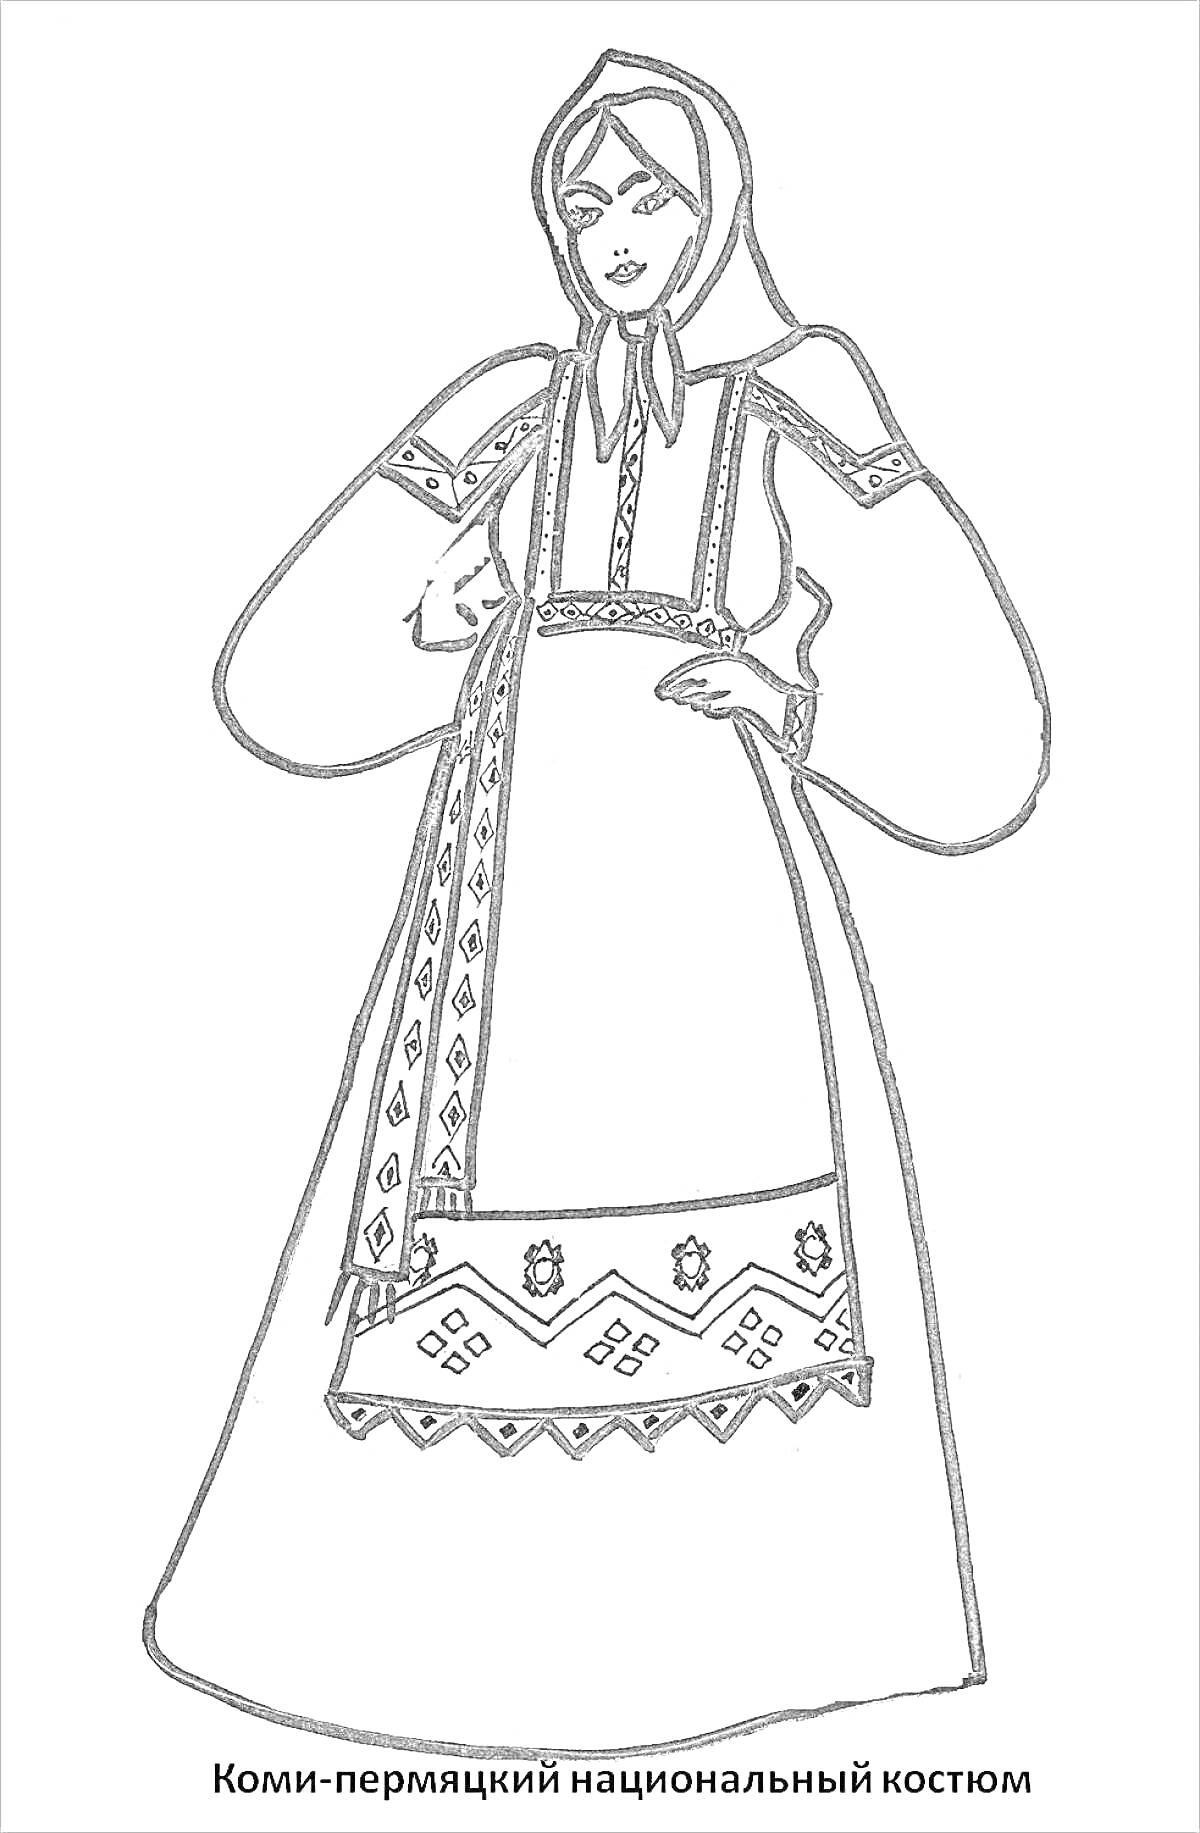 Коми-пермяцкий национальный костюм (головной убор, рубаха с длинными рукавами, сарафан, фартук с вышивкой)